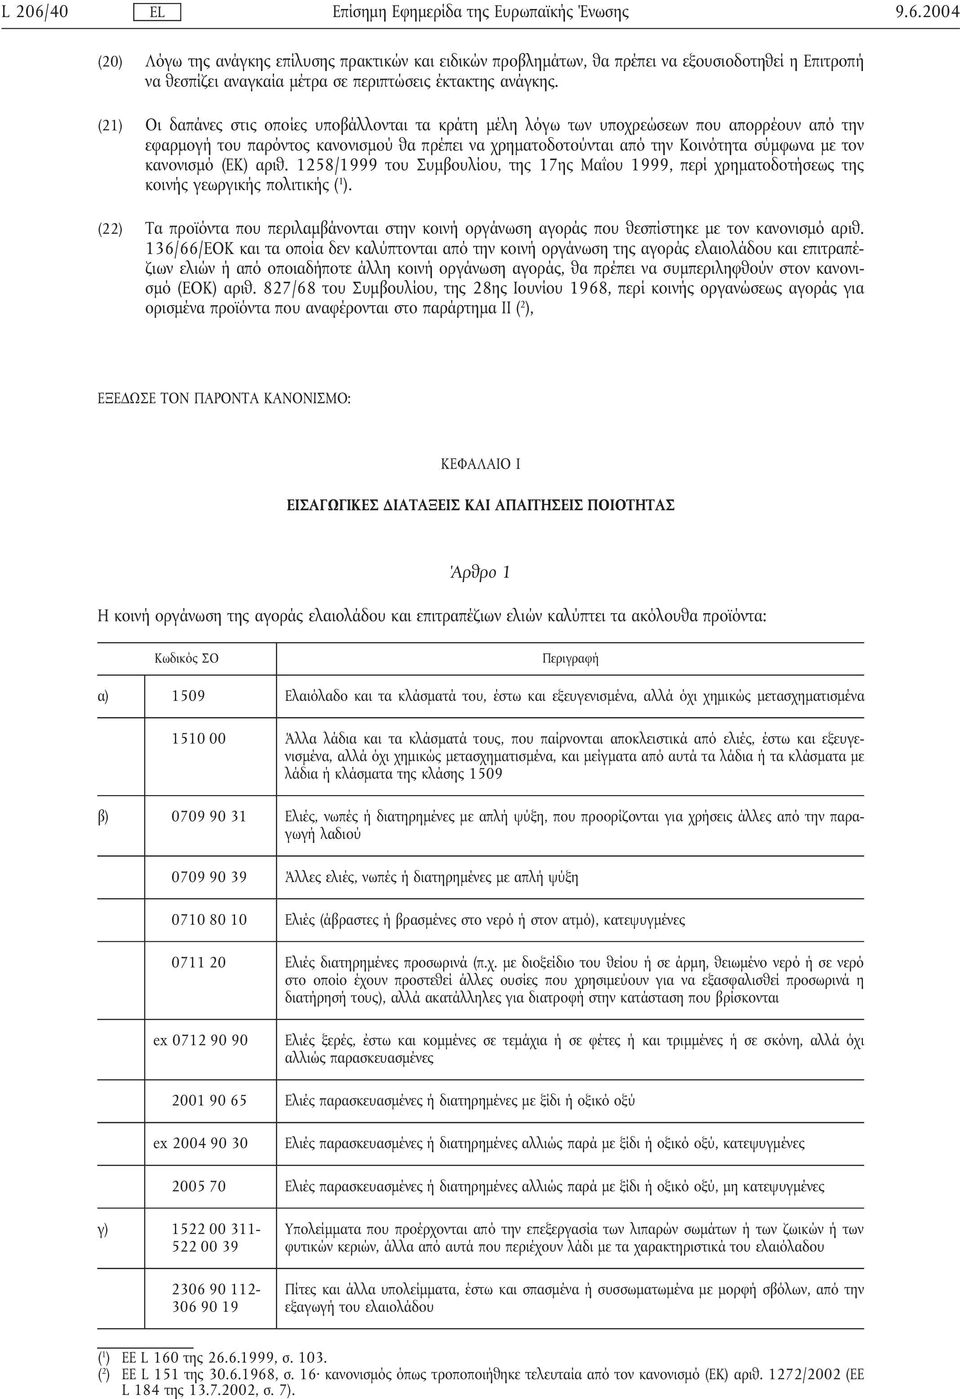 κανονισµό (ΕΚ) αριθ. 1258/1999 του Συµβουλίου, της 17ης Μαΐου 1999, περί χρηµατοδοτήσεως της κοινής γεωργικής πολιτικής ( 1 ).